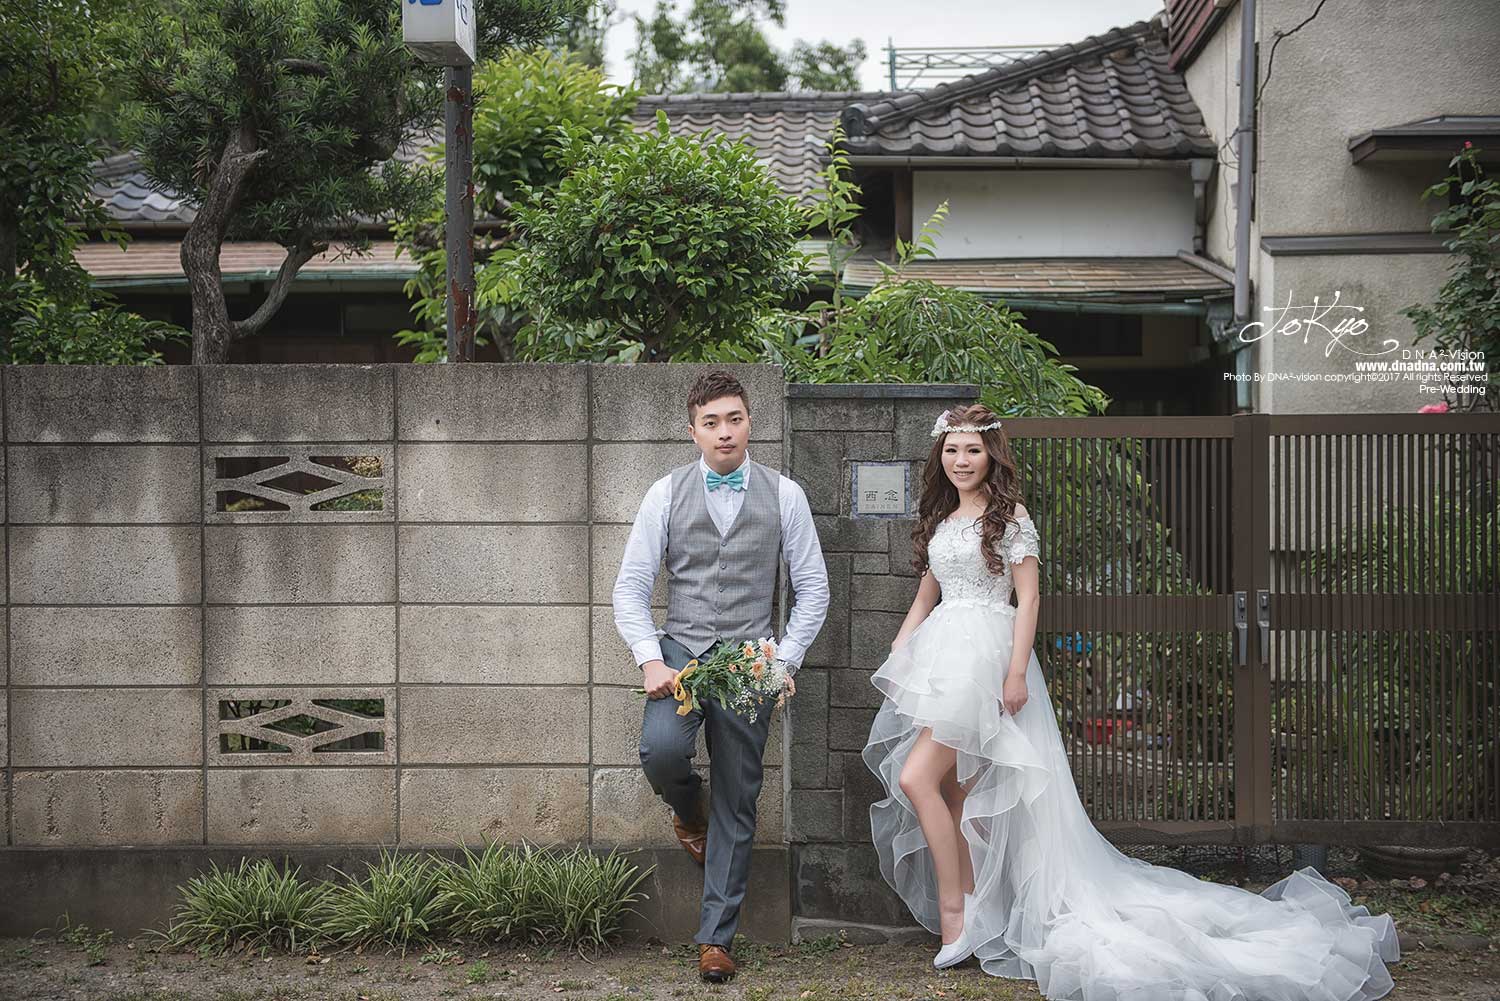 《東京婚紗》liang&ting:日本海外婚紗39